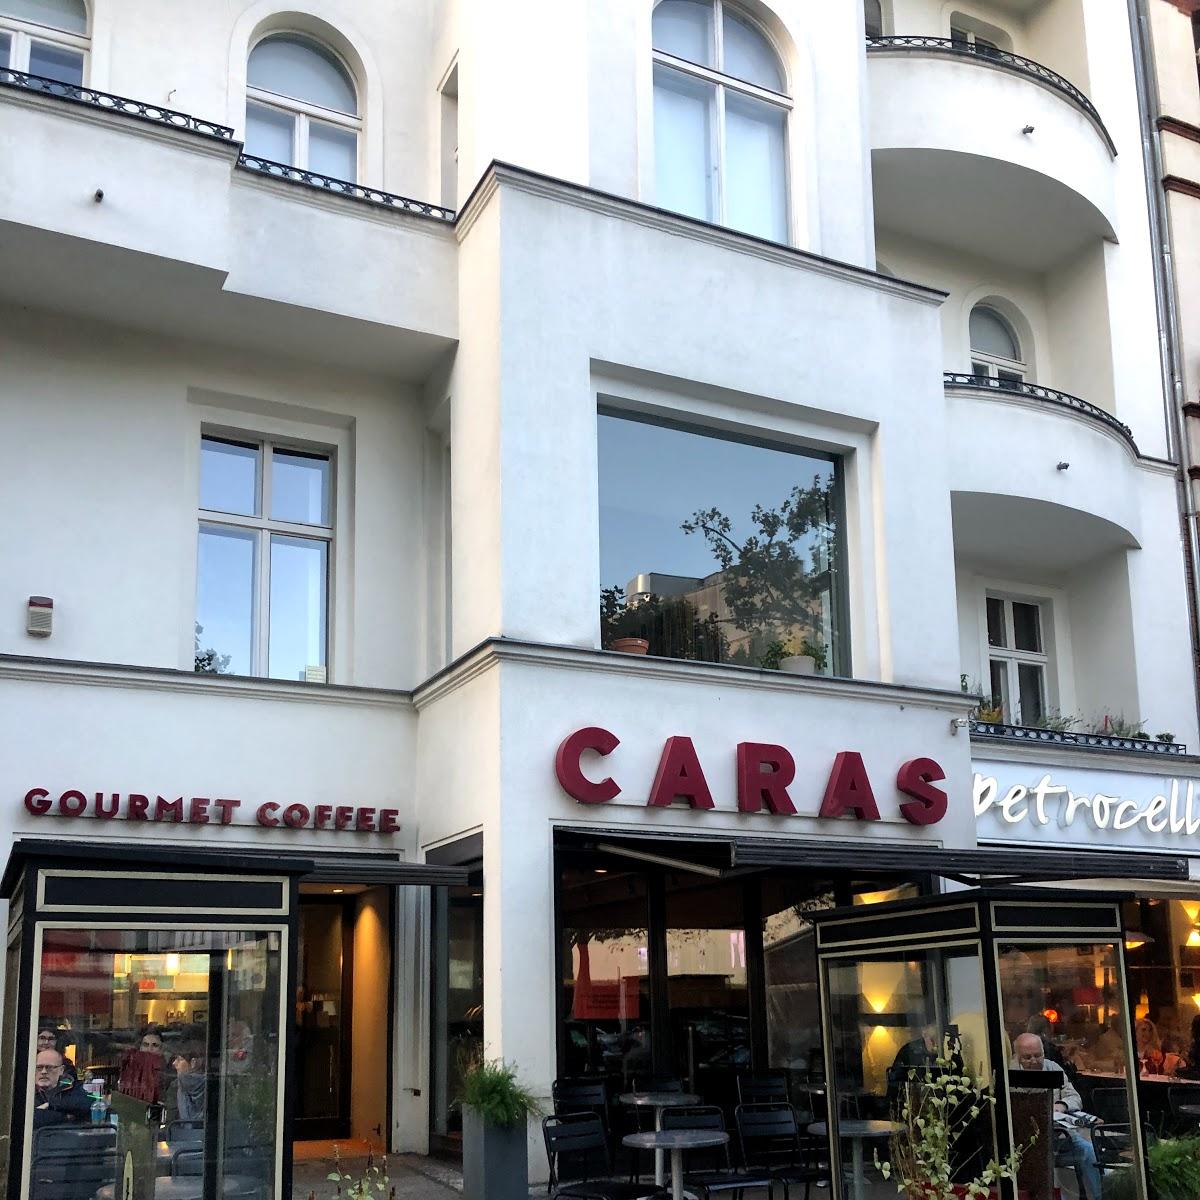 Restaurant "CARAS" in Berlin